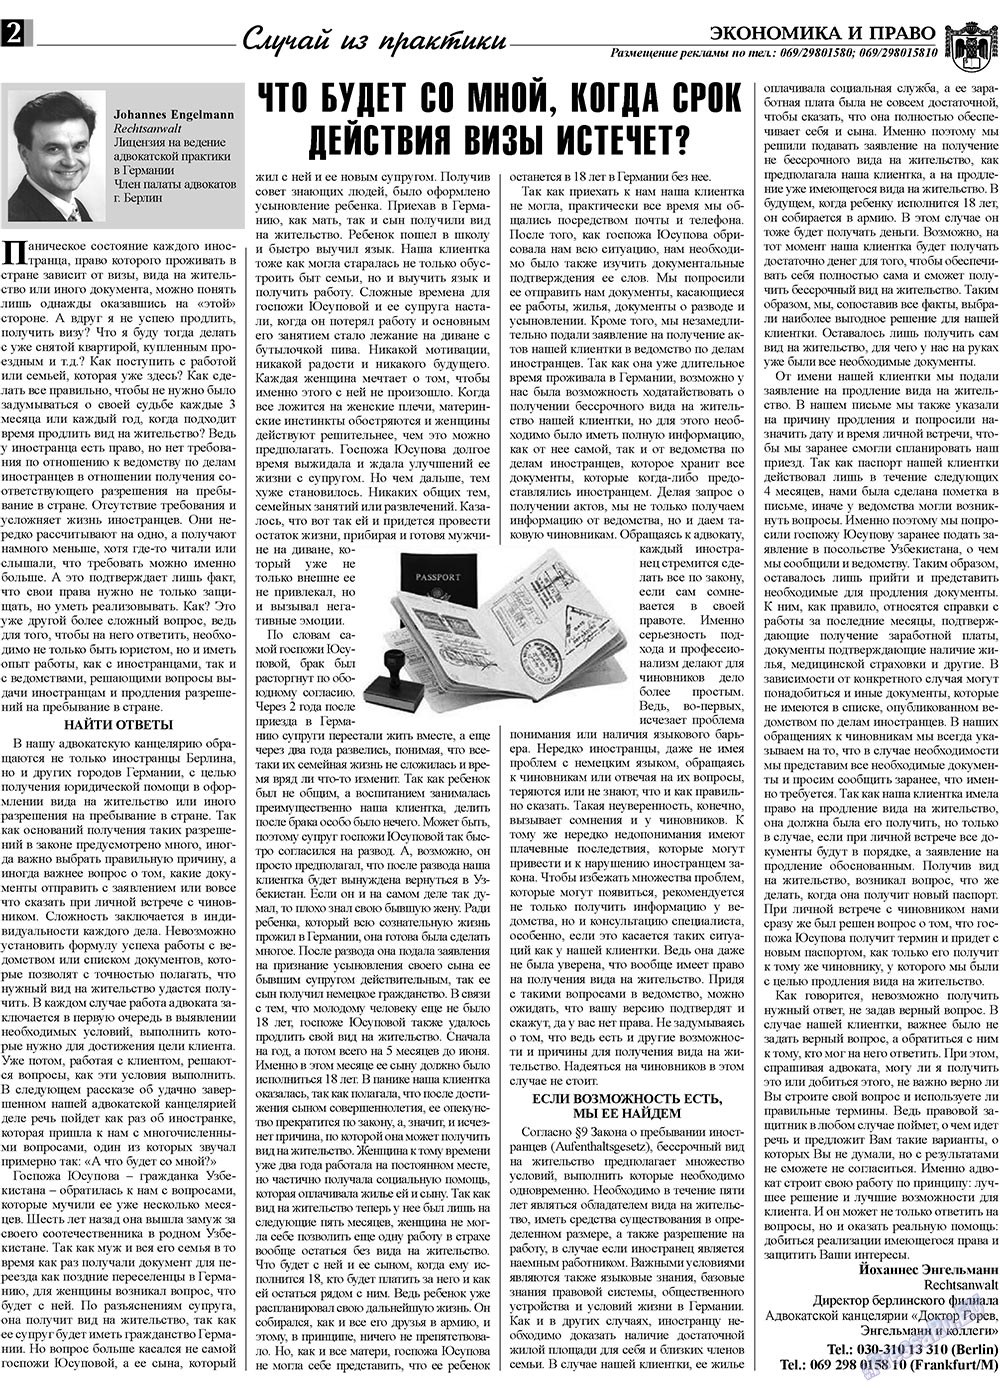 Экономика и право, газета. 2009 №9 стр.2